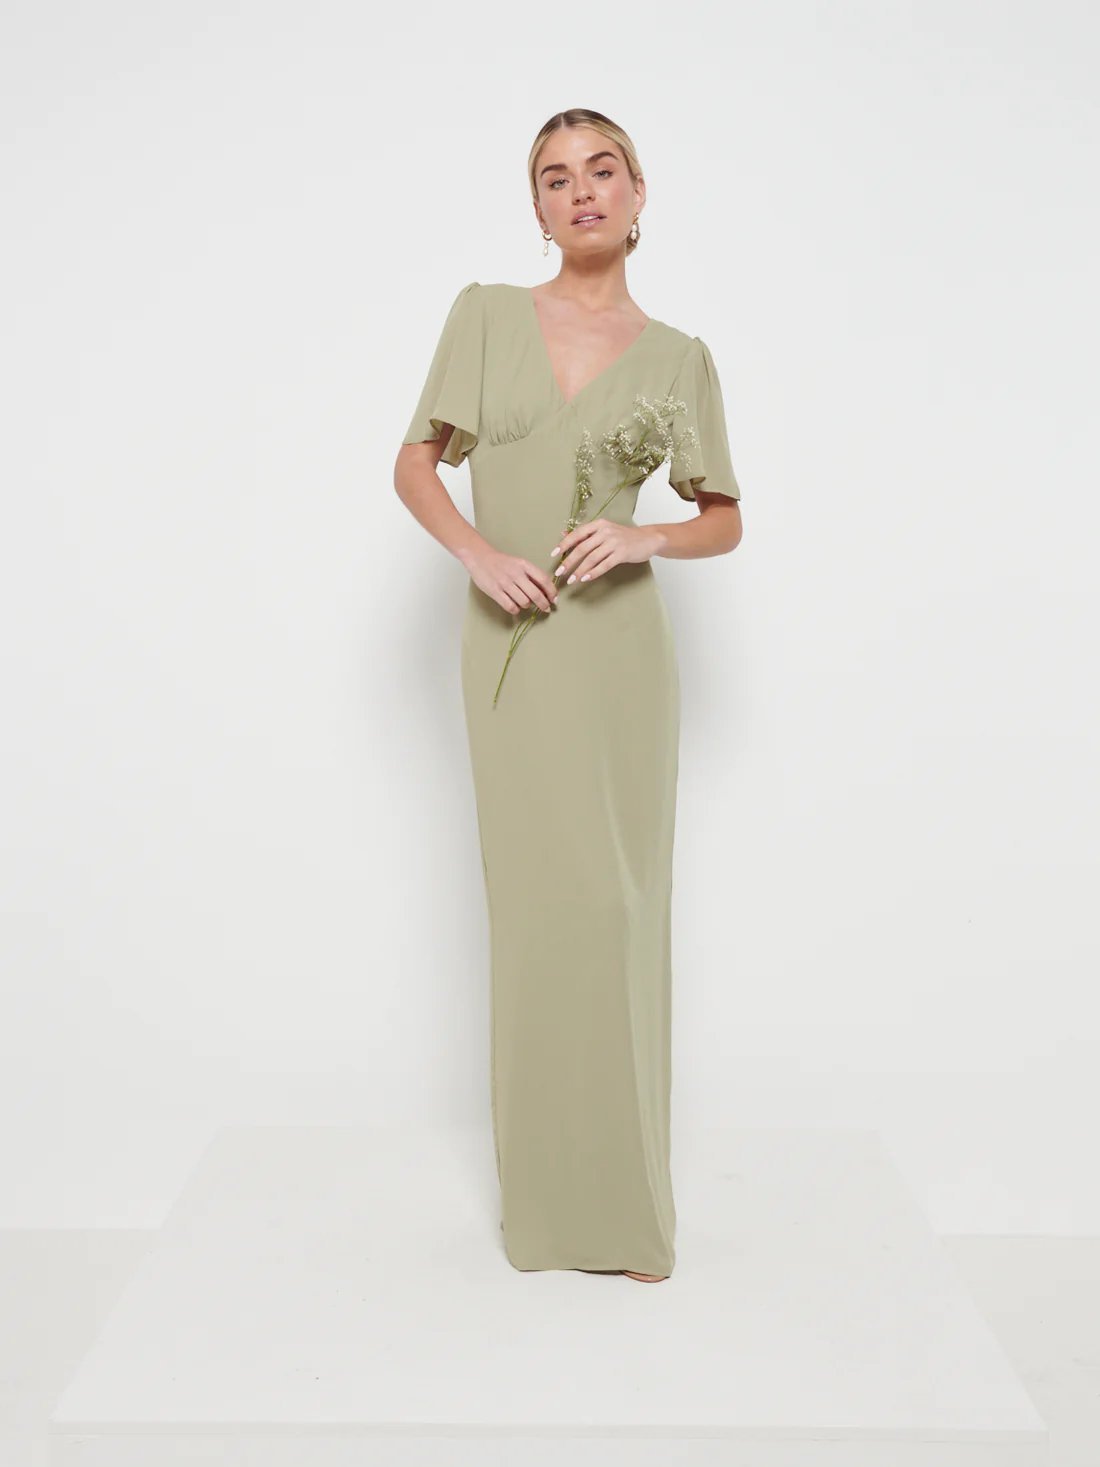 PRETTY LAVISH Edie Chiffon Maxi Dress | Something Borrowed — Something ...